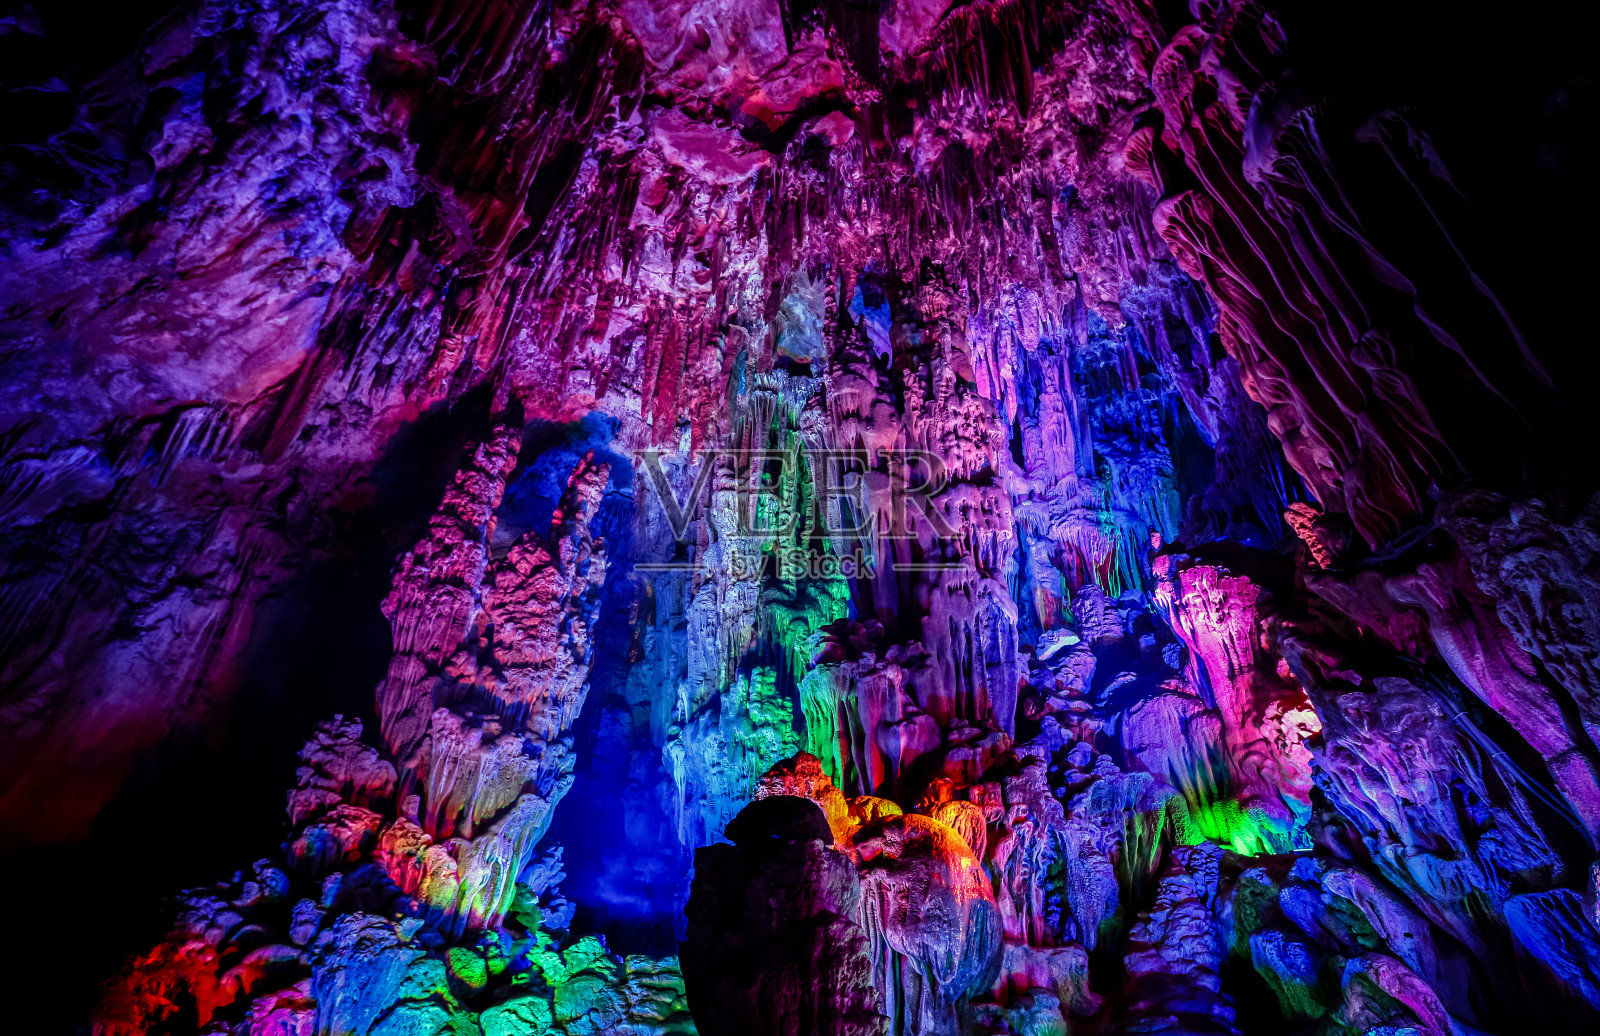 芦笛洞是中国的一个天然石灰岩洞穴照片摄影图片